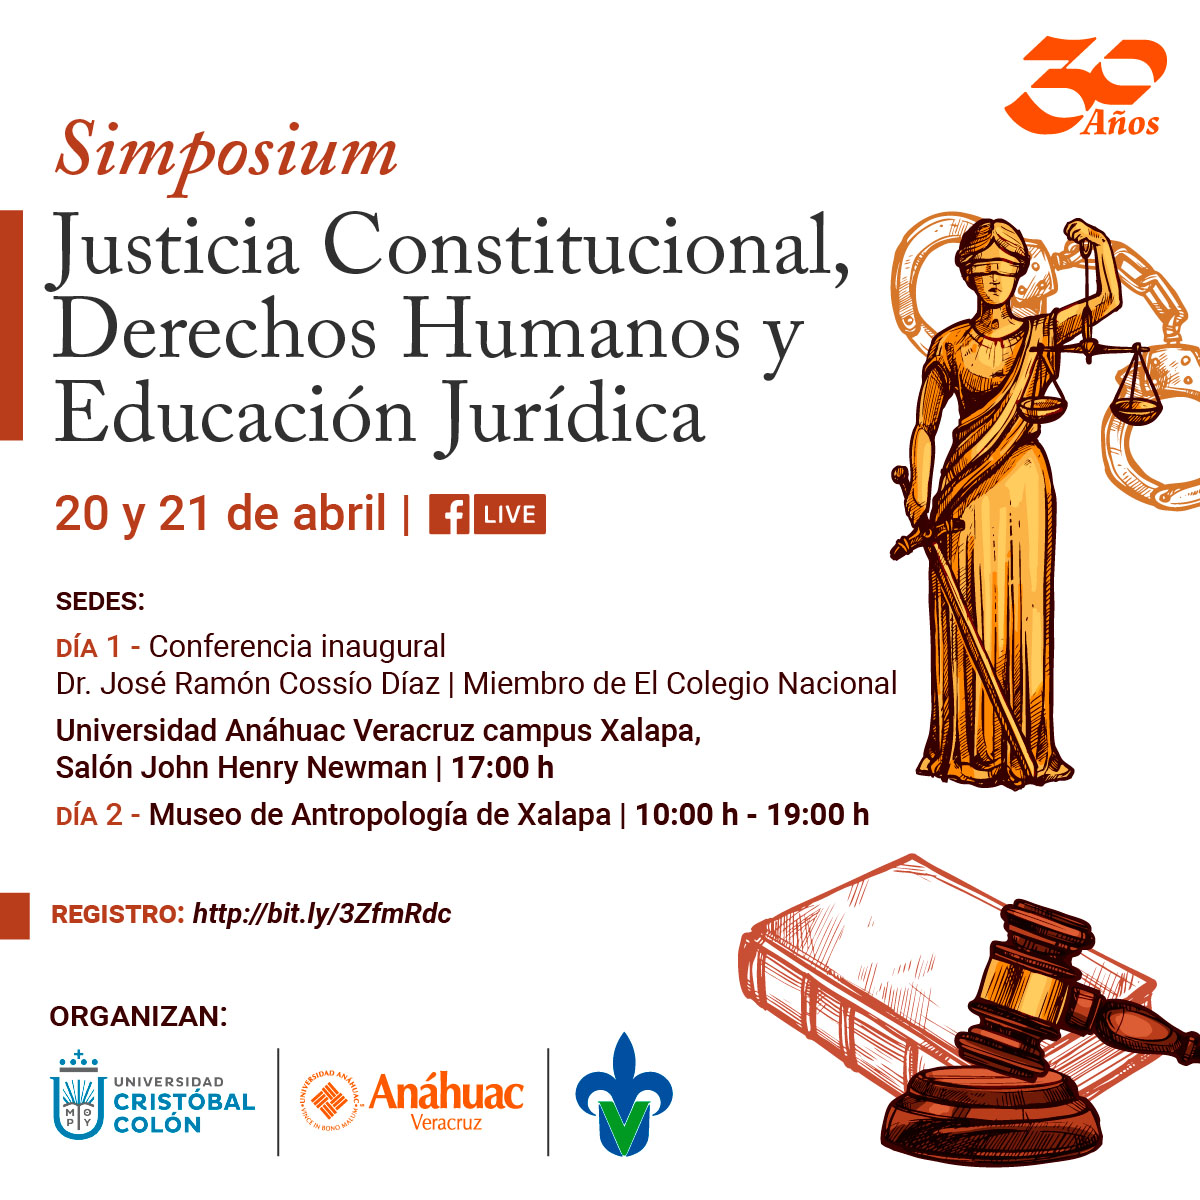 Simposium sobre Justicia Constitucional, Derechos Humanos y Educación Jurídica